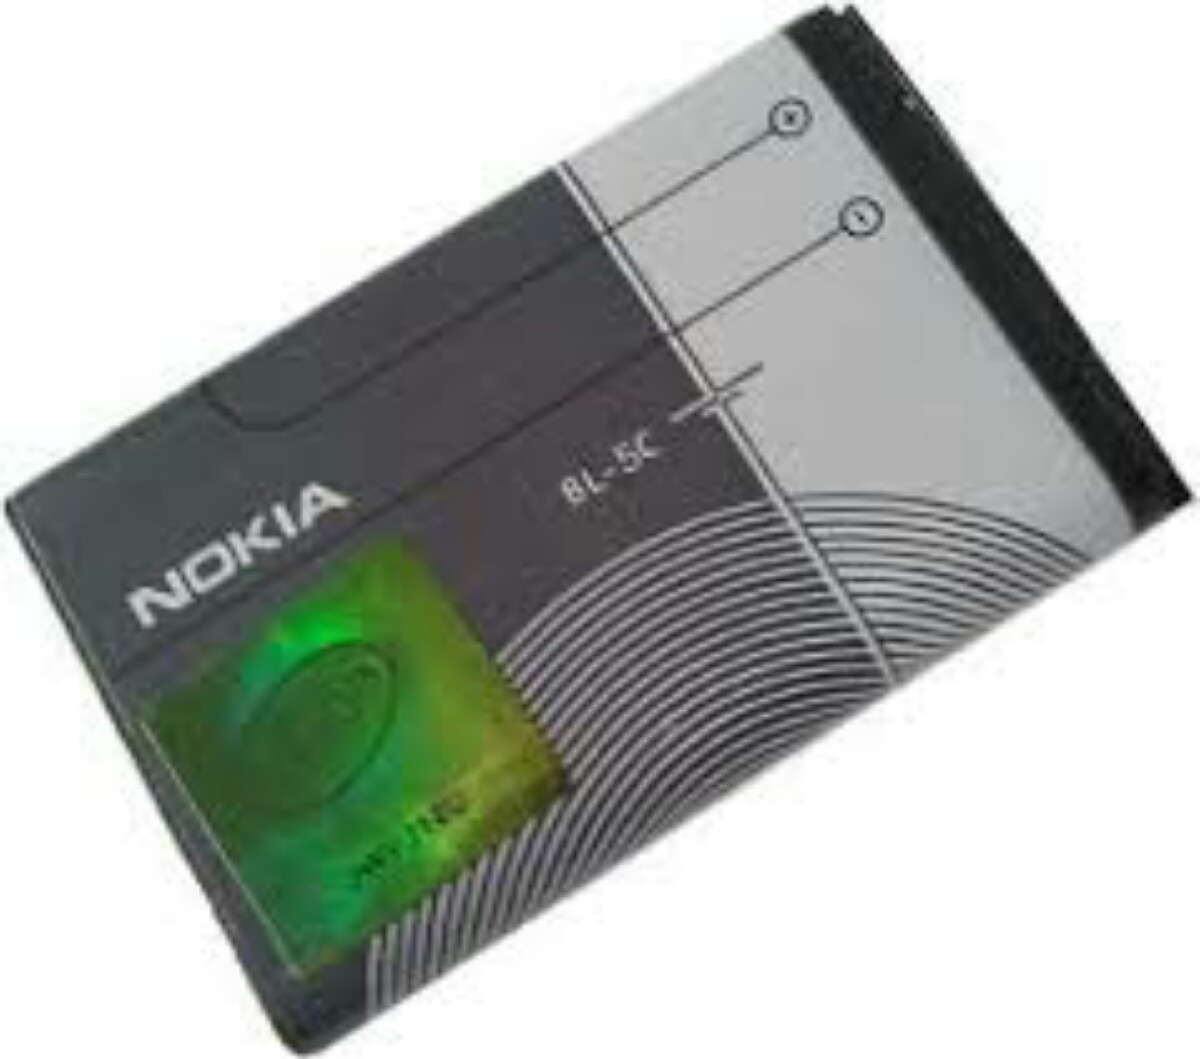 Bateria Nokia Bl-5c 1020mah 3.7v 3.8wh - R$ 39,90 em 